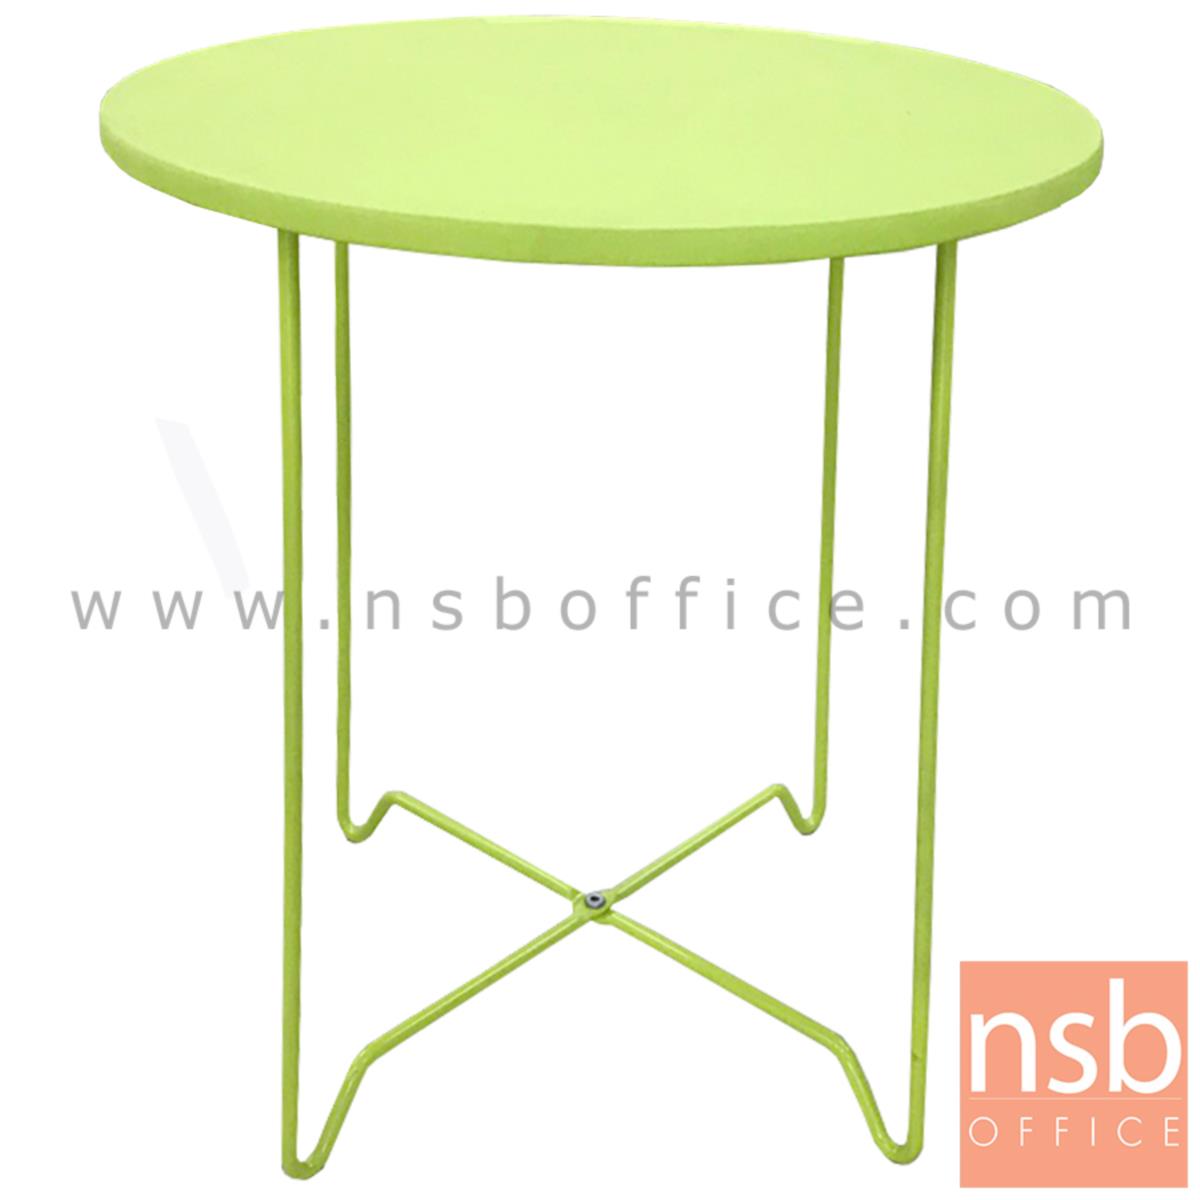 โต๊ะกลมโมเดิร์นสีเขียว  ขนาด 40Di*46H cm. ขาเหล็ก